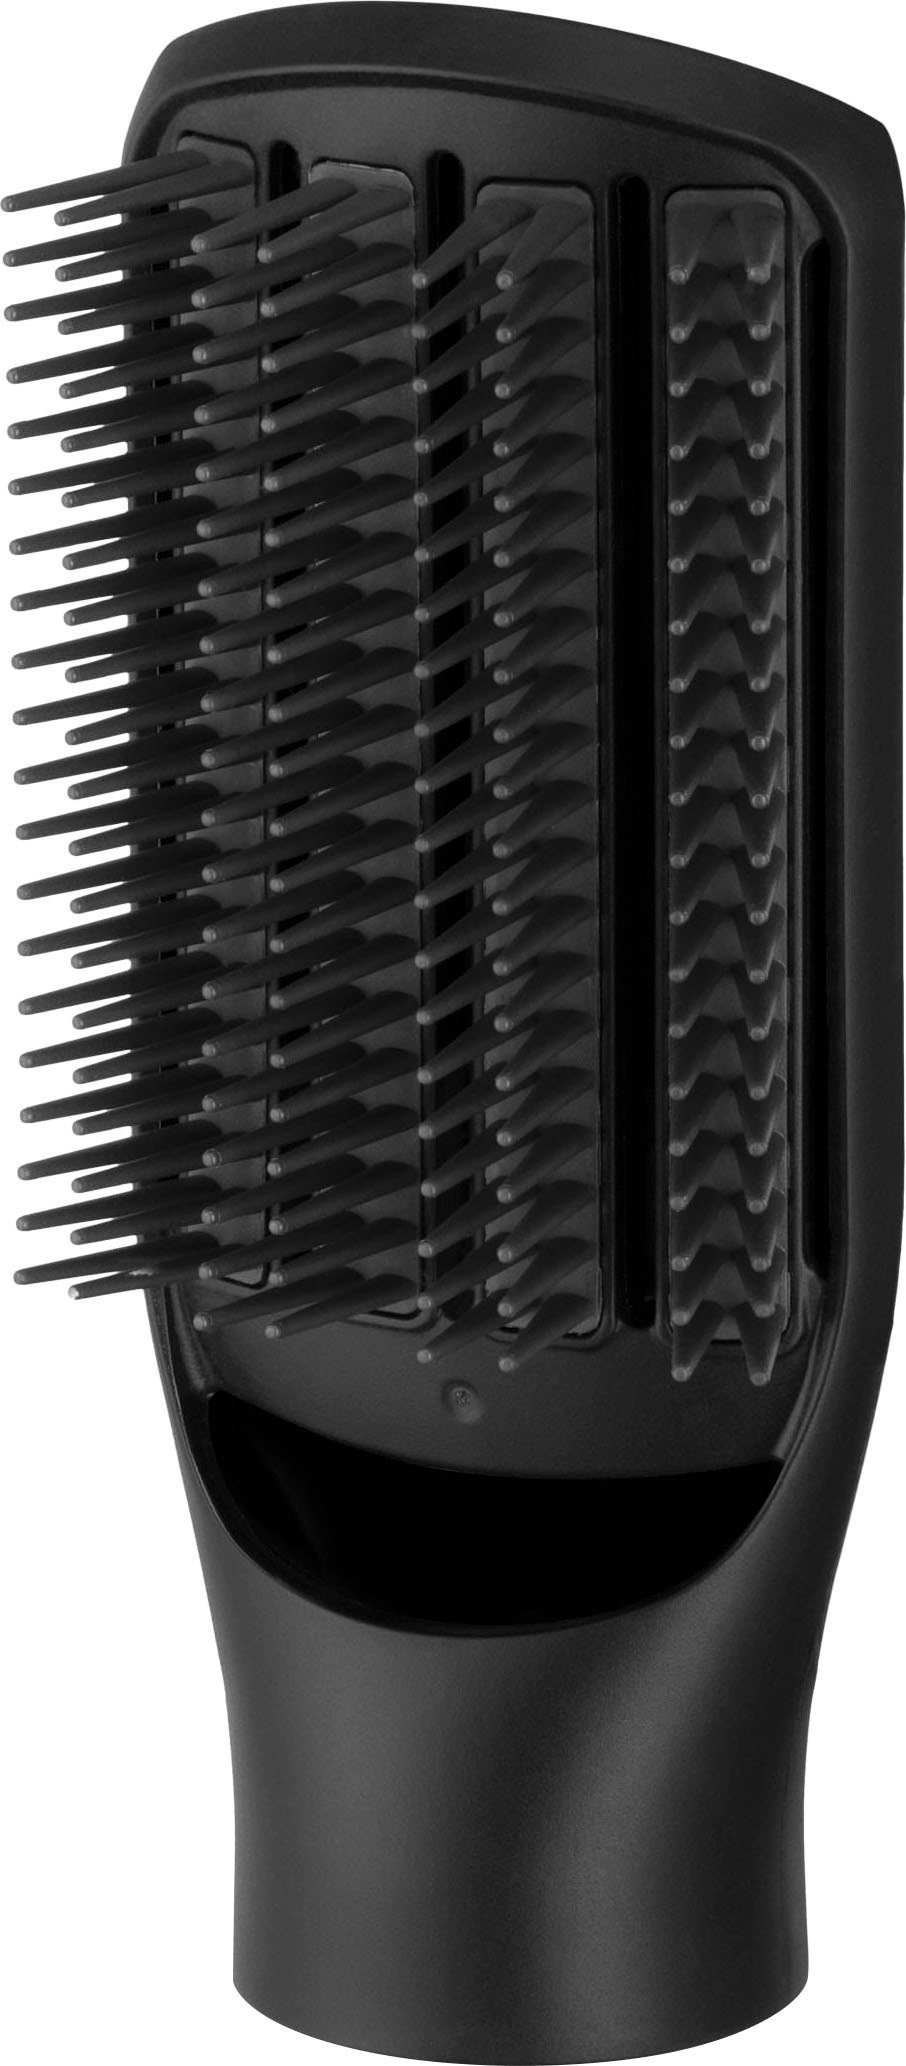 Remington Warmluftbürste »Blow Dry & Style AS7580«, 3 Aufsätze}, 1.000 Watt (rotierender Airstyler/Rund-& Lockenbürste) alle Haarlängen